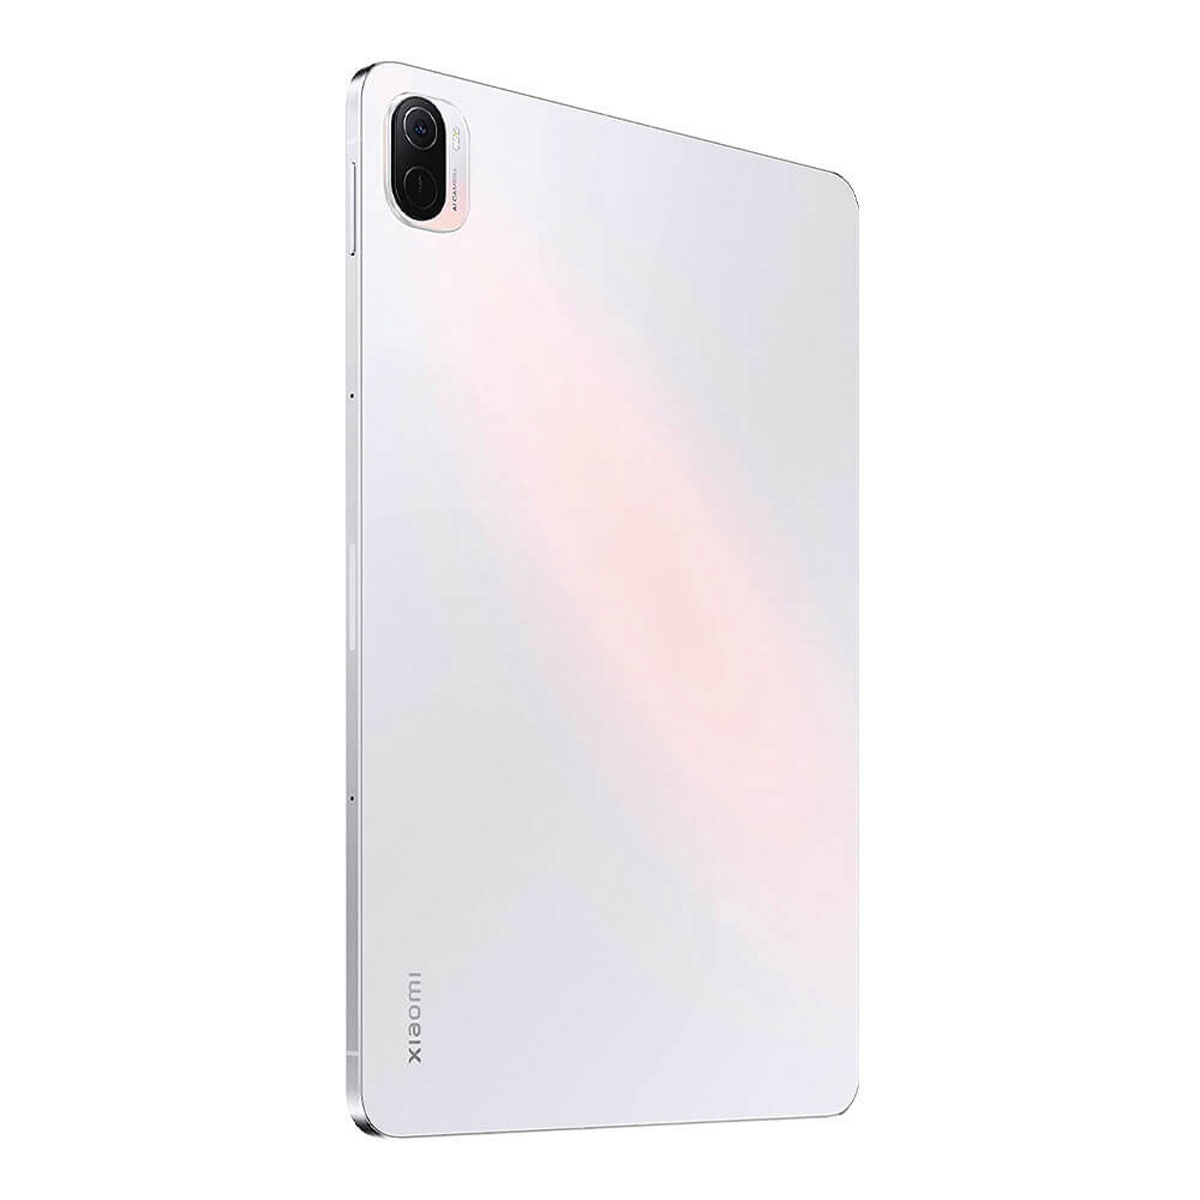 Zoll, PAD Tablet, 11 128 5 XIAOMI VHU4102EU Pearl WHITE White 6GB/128GB, GB, PEARL